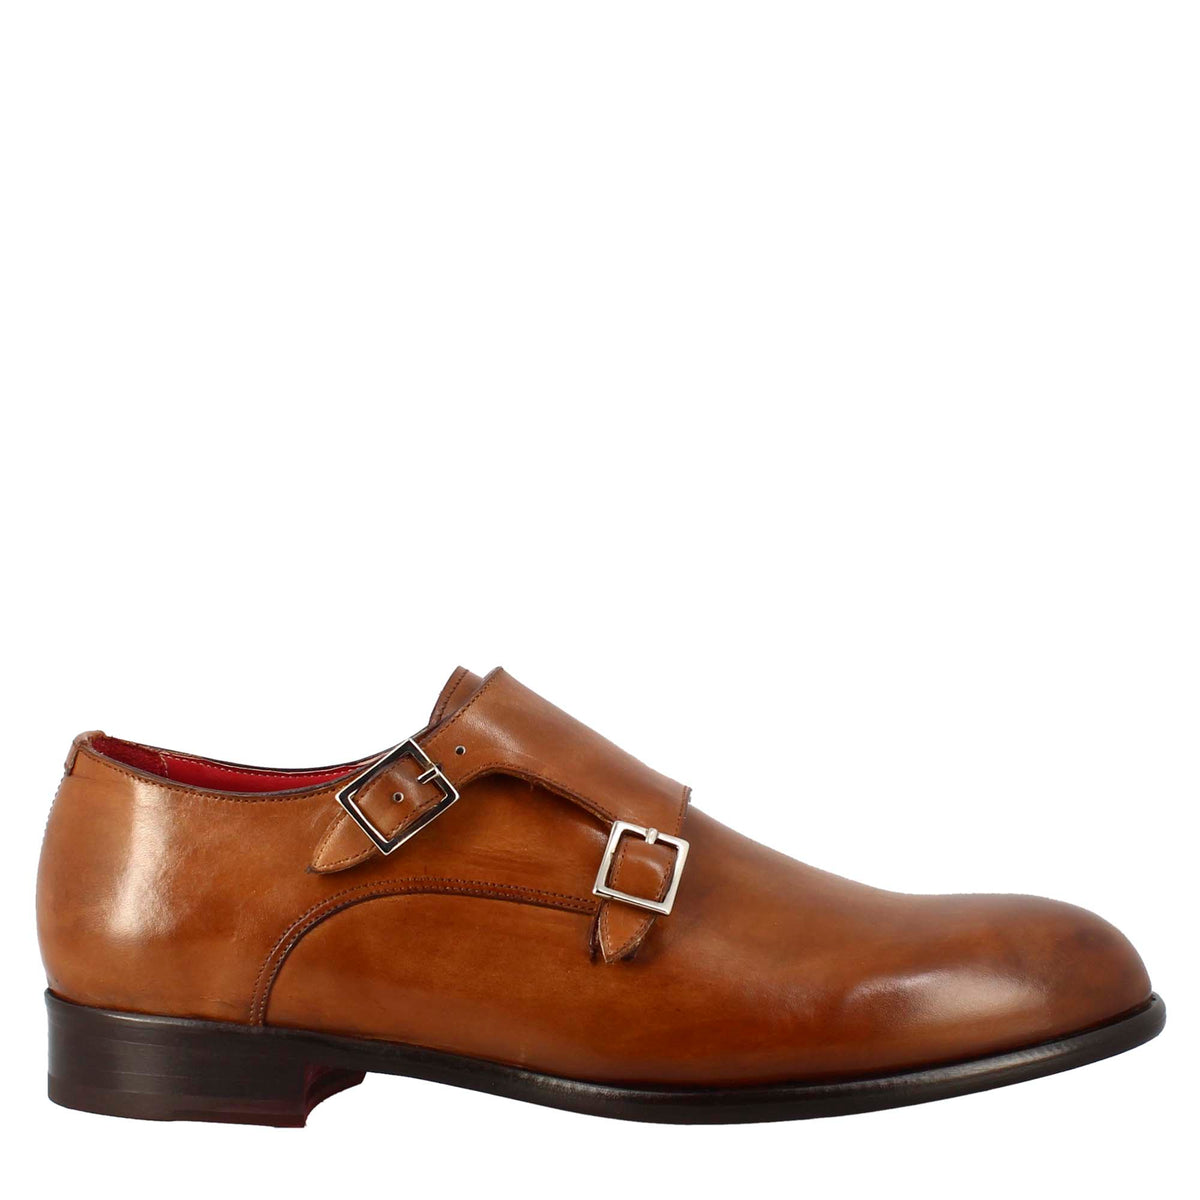 Chaussure homme double boucle en cuir marron terre de sienne